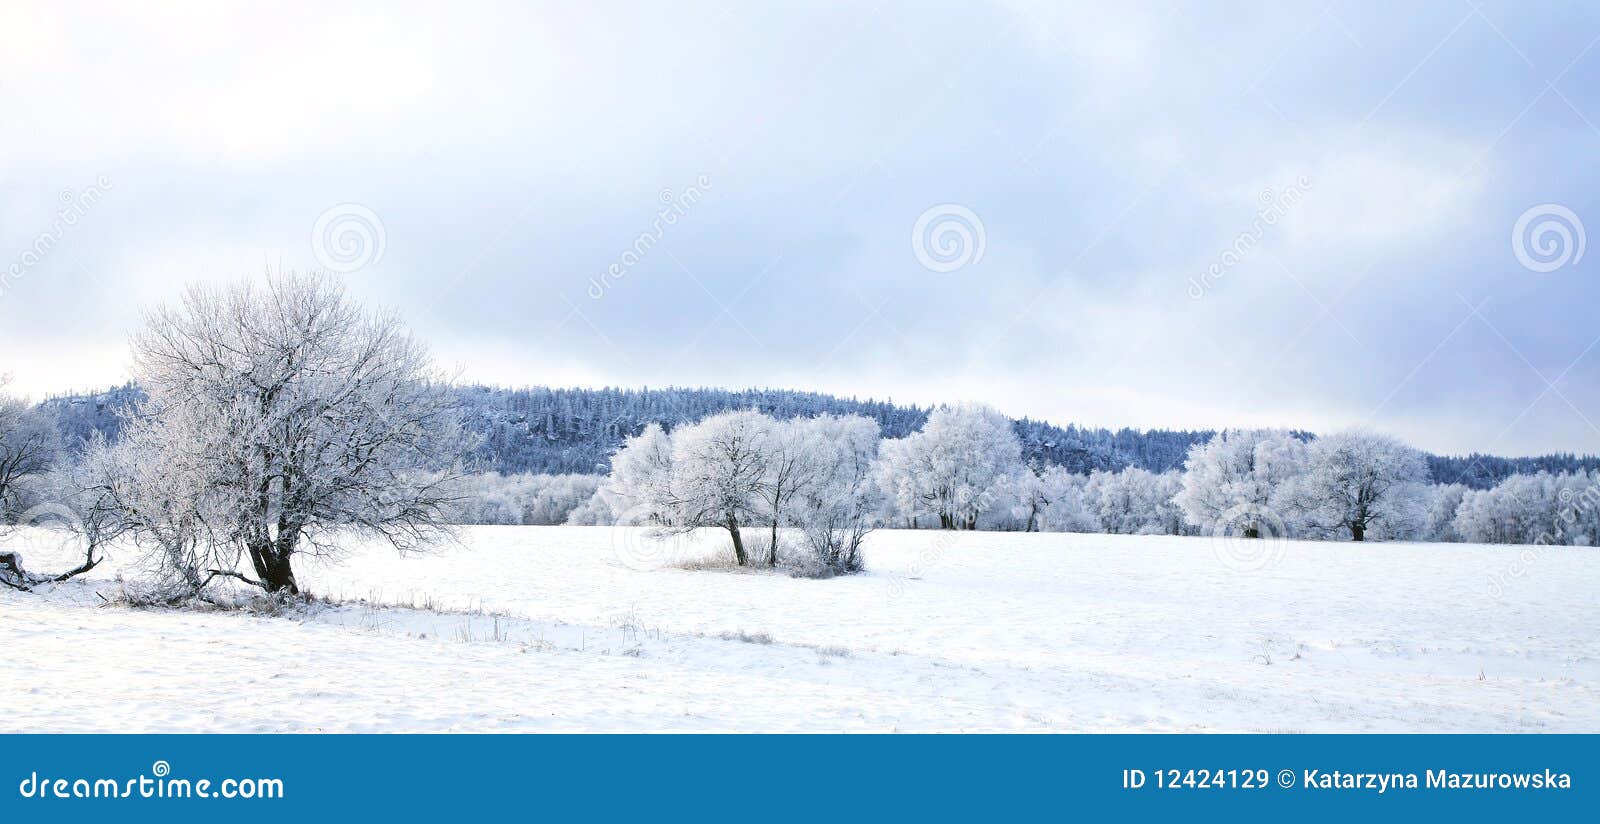 Pasterka Dorf im Schnee â Winter in Polen. Malerisches, kleines Dorf Pasterka (Passendorf) bis zum Winter. Nationalpark â Stolowe Berge in Polen